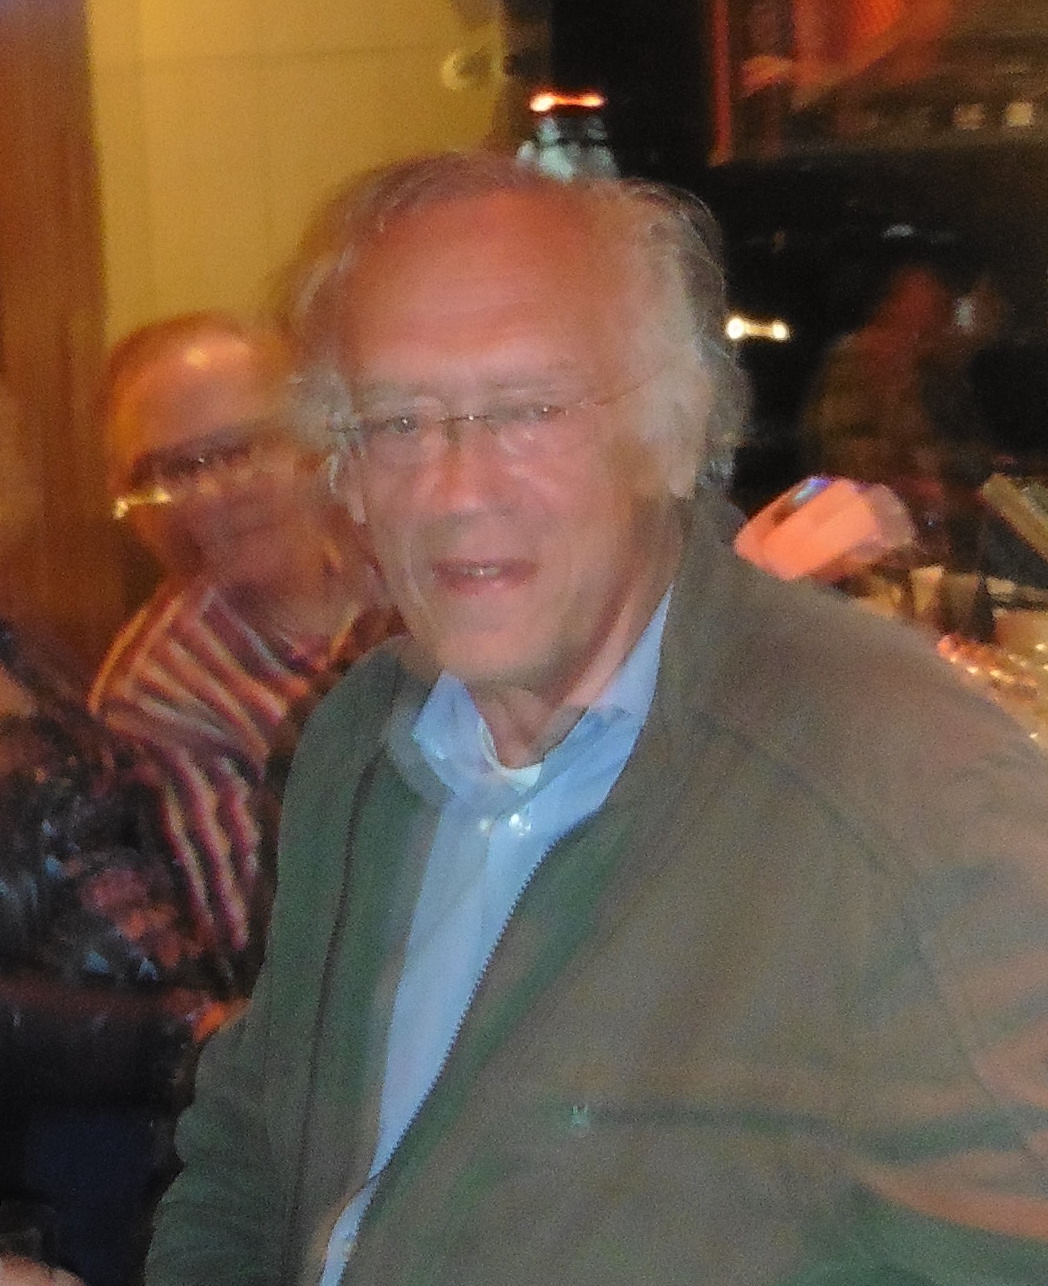 Don Linszen in Arti op Prinsjesdag 2016 na de Olofspoort borrl